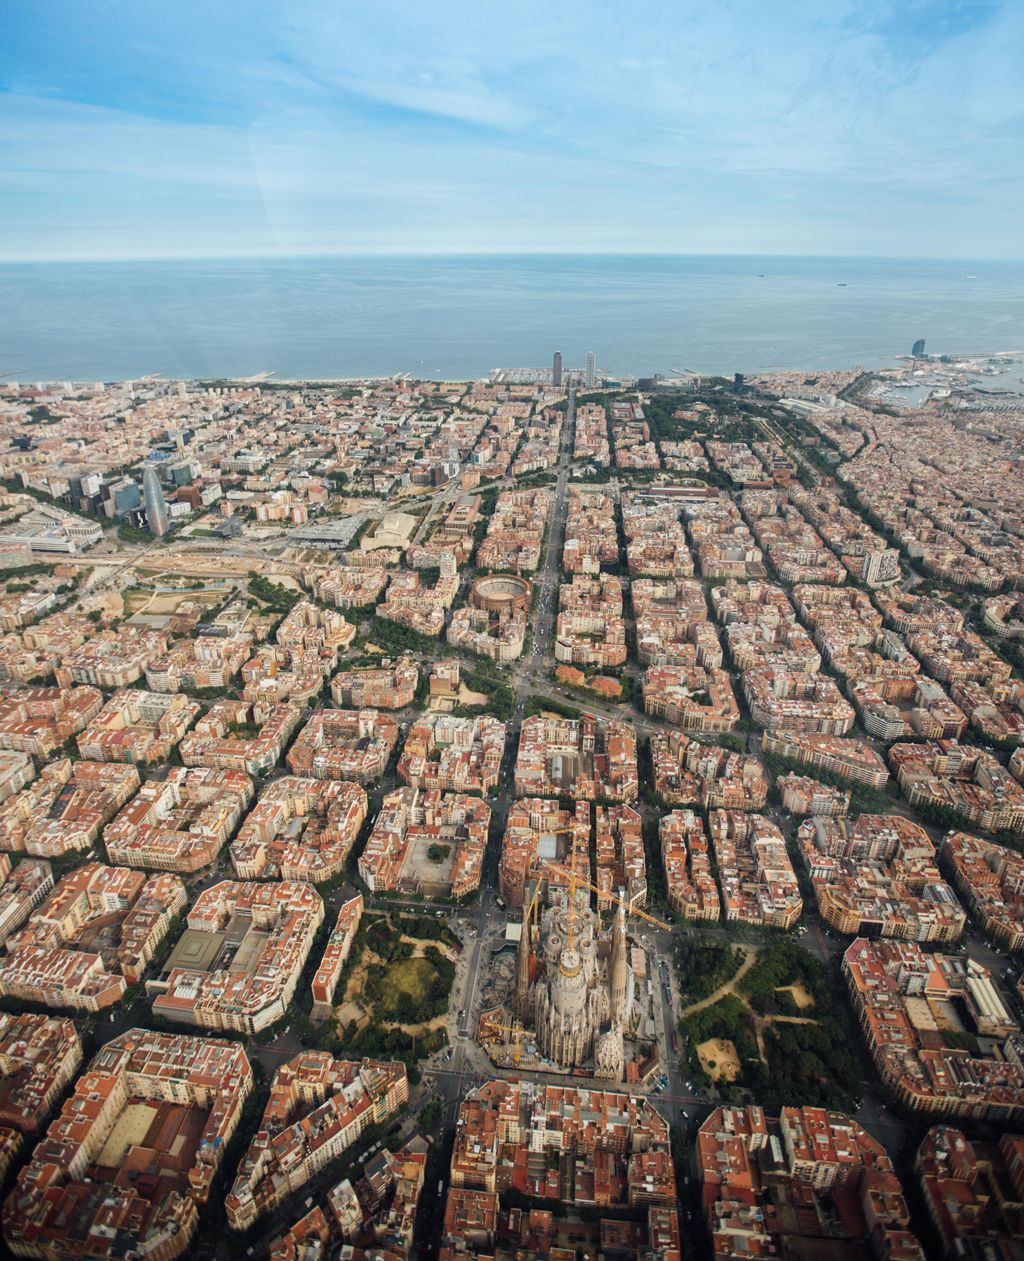 Barcelone a tout ce qu’il faut | Barcelona Shopping City